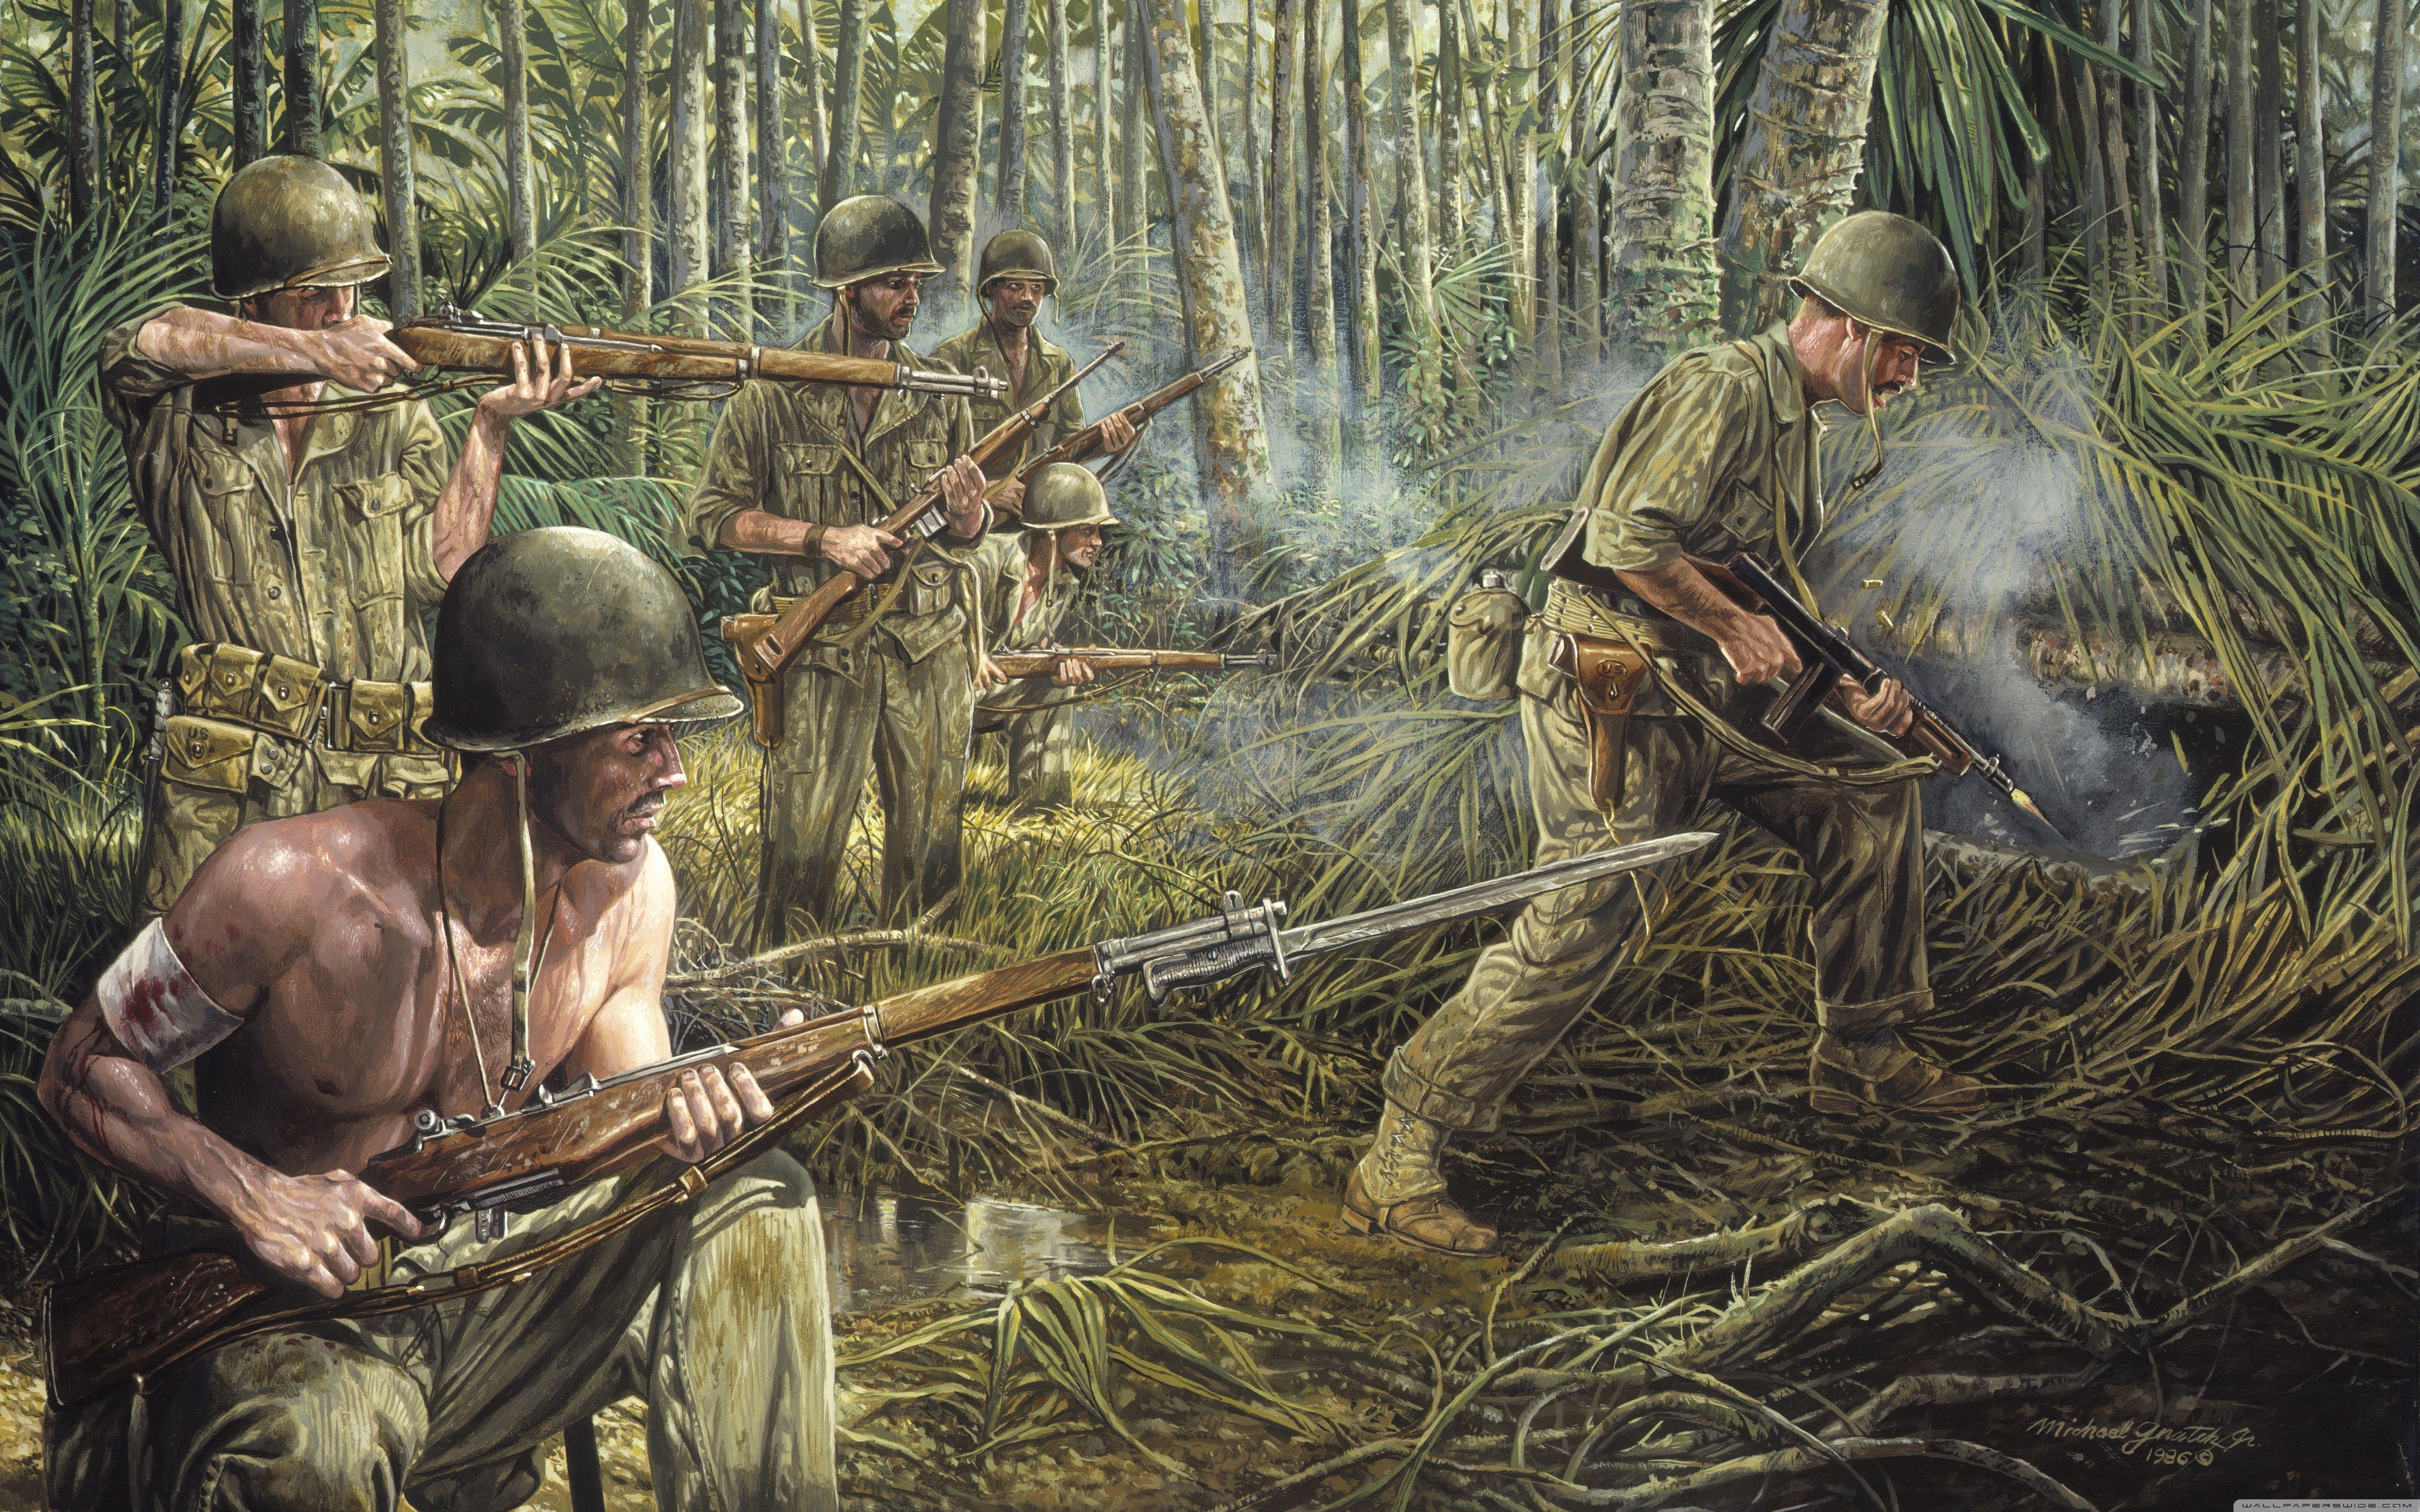 Vietnam War Painting HD desktop wallpaper, Widescreen, High